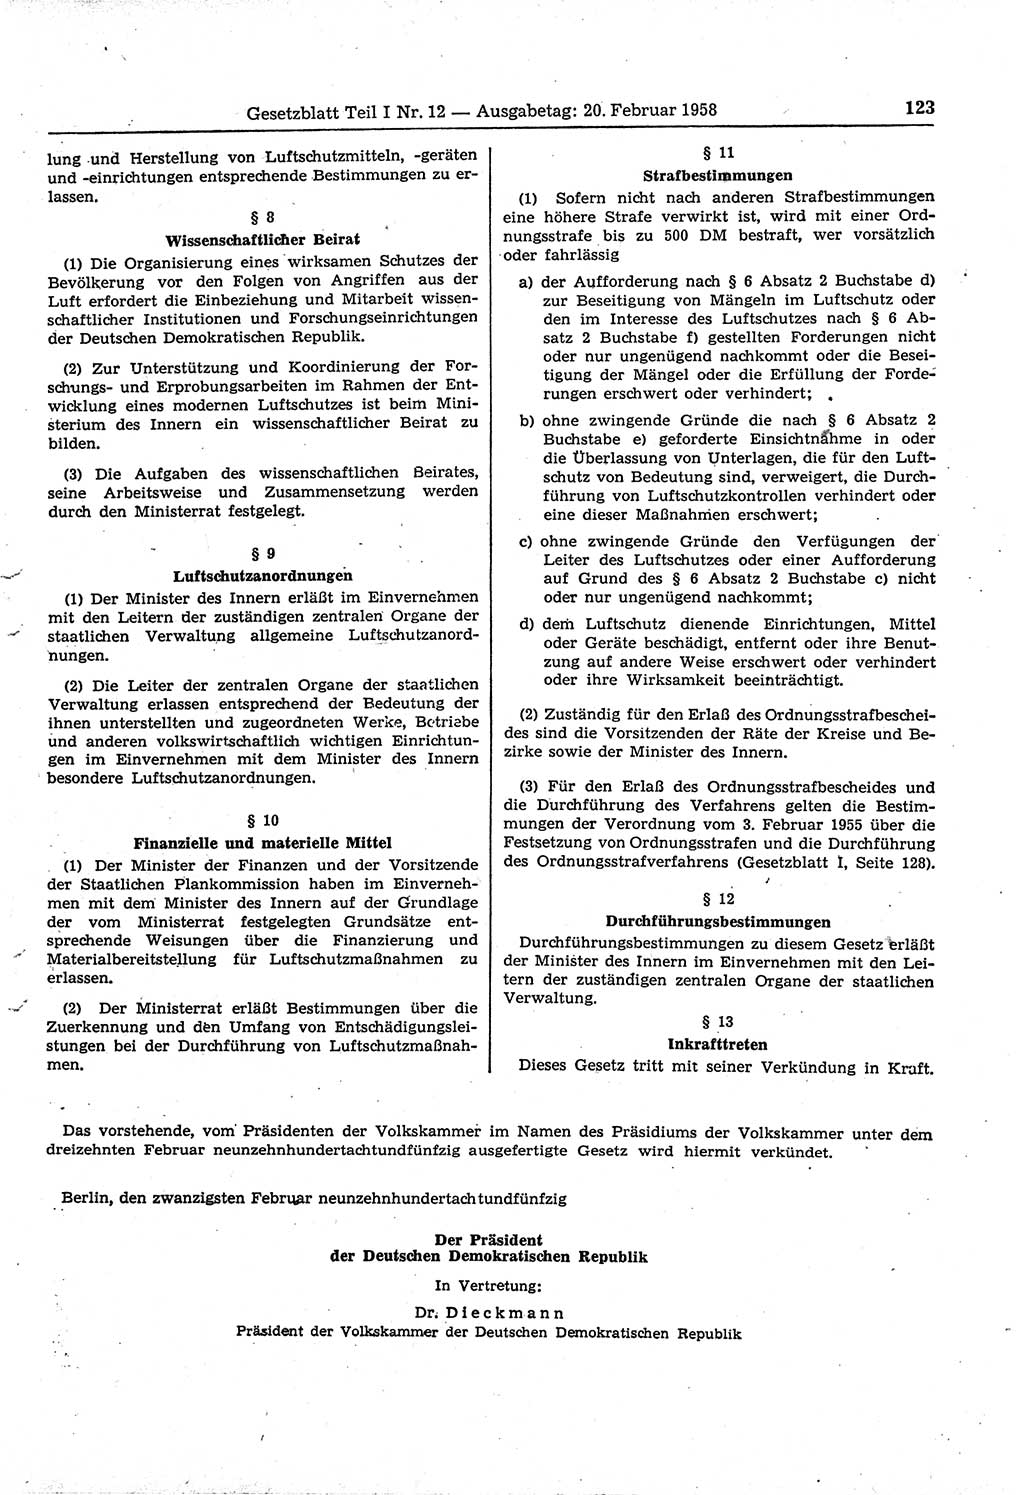 Gesetzblatt (GBl.) der Deutschen Demokratischen Republik (DDR) Teil Ⅰ 1958, Seite 123 (GBl. DDR Ⅰ 1958, S. 123)